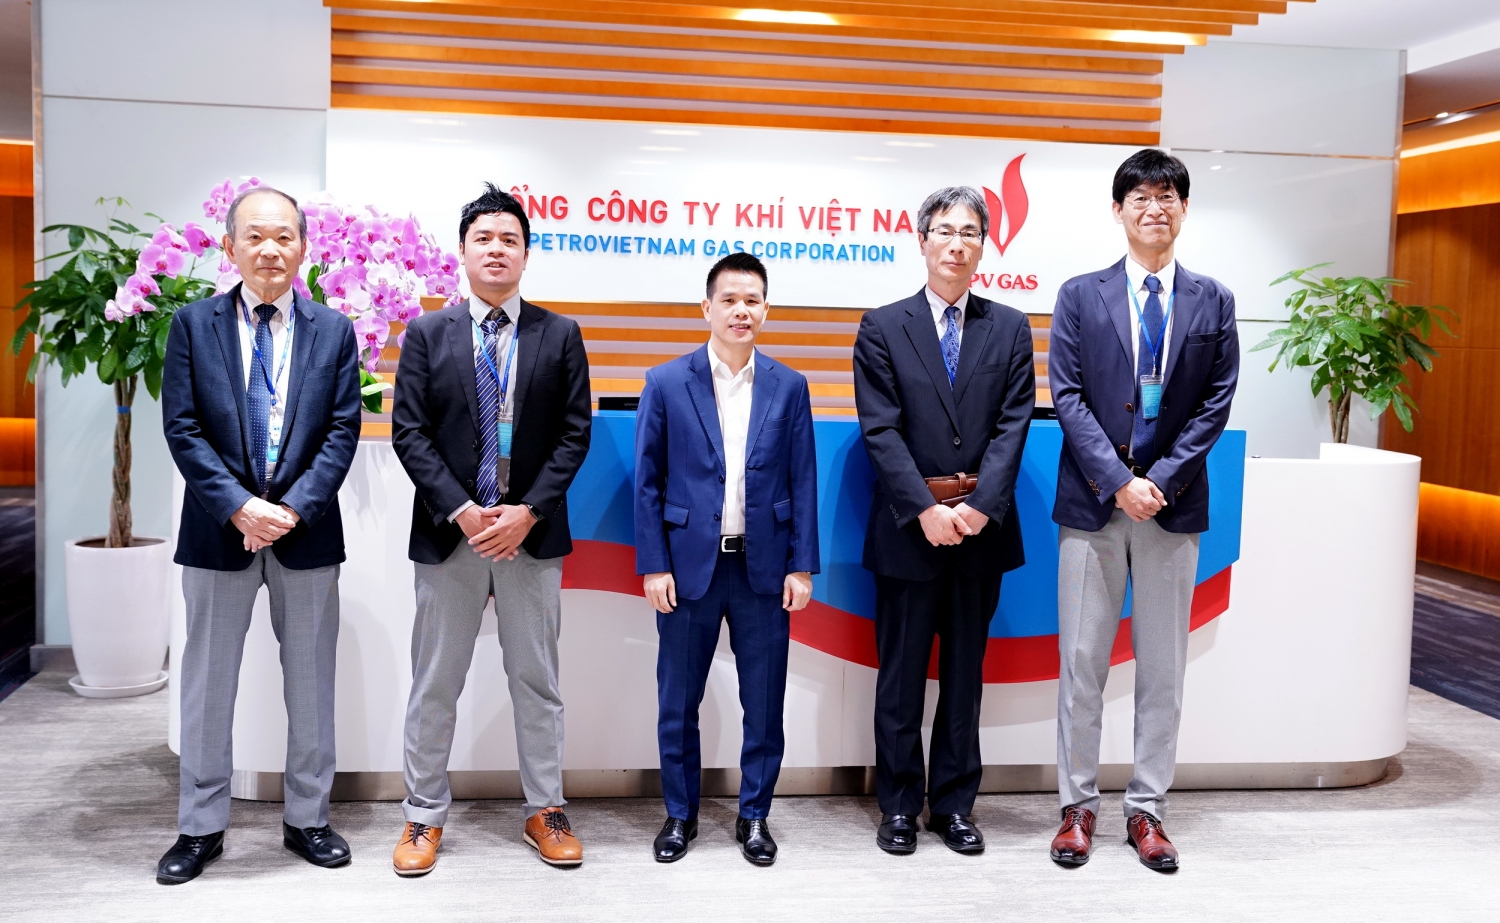 Phó Tổng Giám đốc PV GAS Phạm Văn Phong đón tiếp Đoàn công tác JCCP và Công ty Hagio Nhật Bản tại trụ sở PV GAS